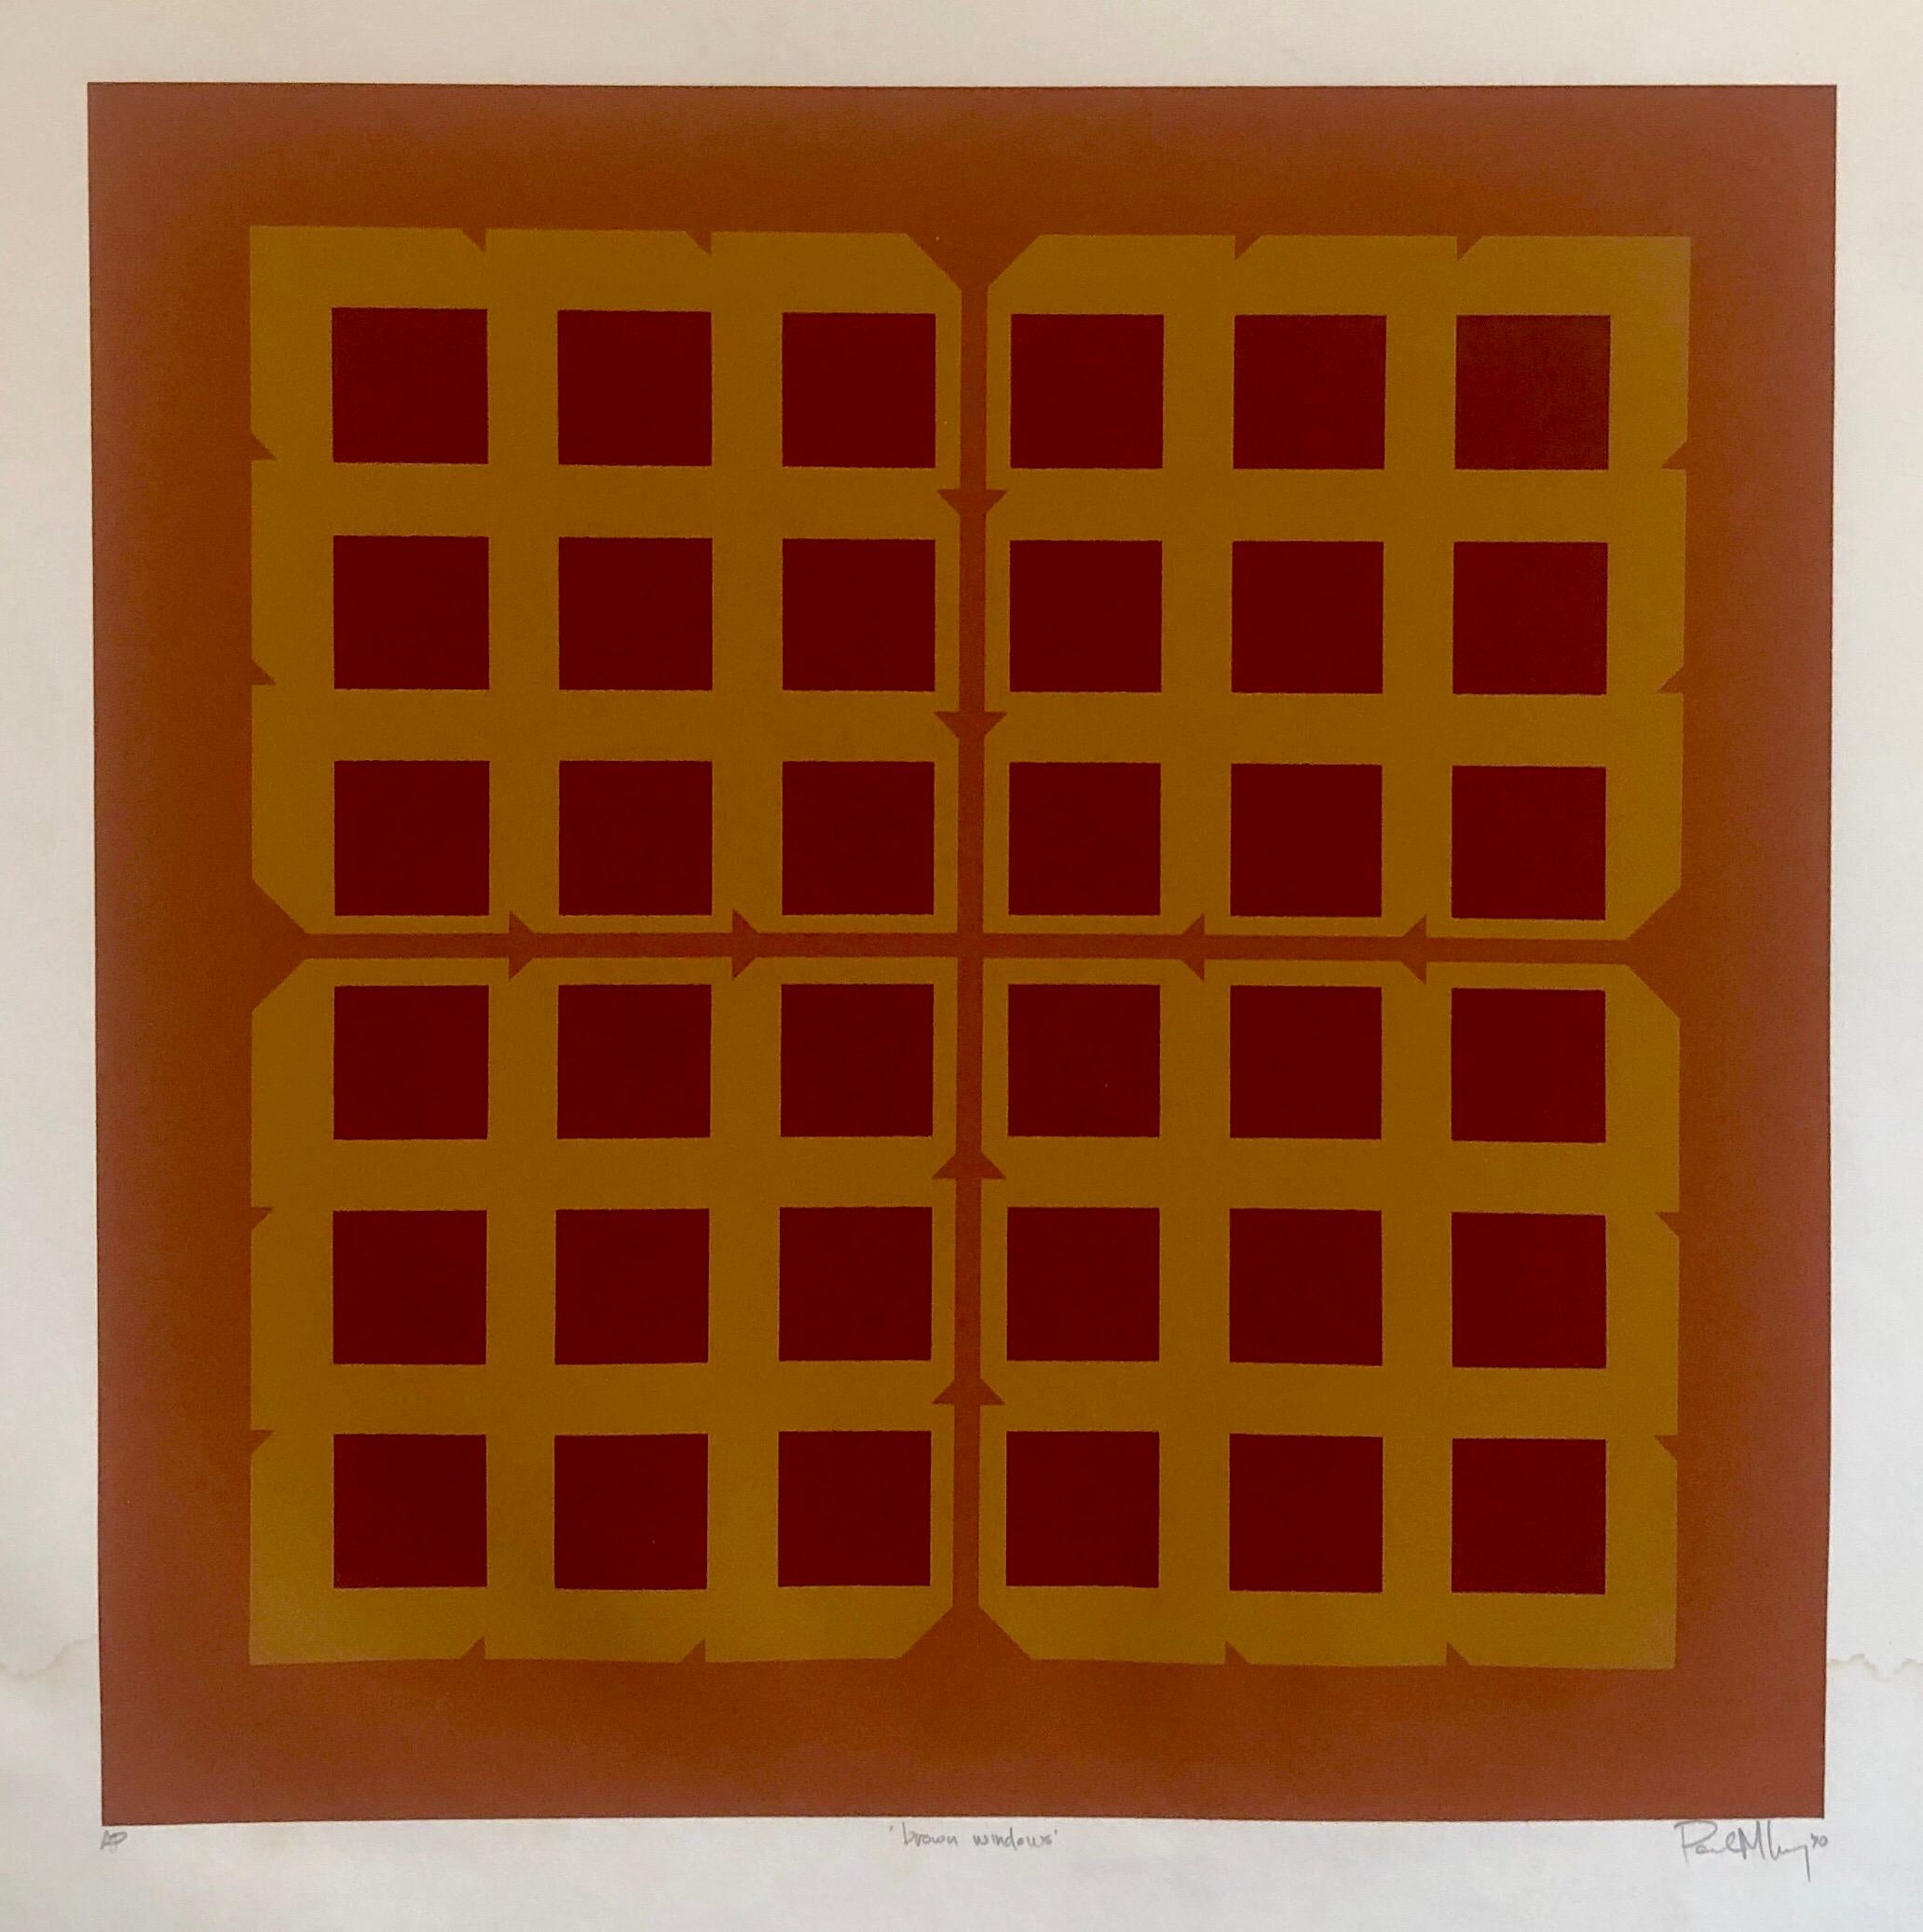 Abstract Geometric 1970s Kinetic Silkscreen Screen Print Manner Vasarely Op Art